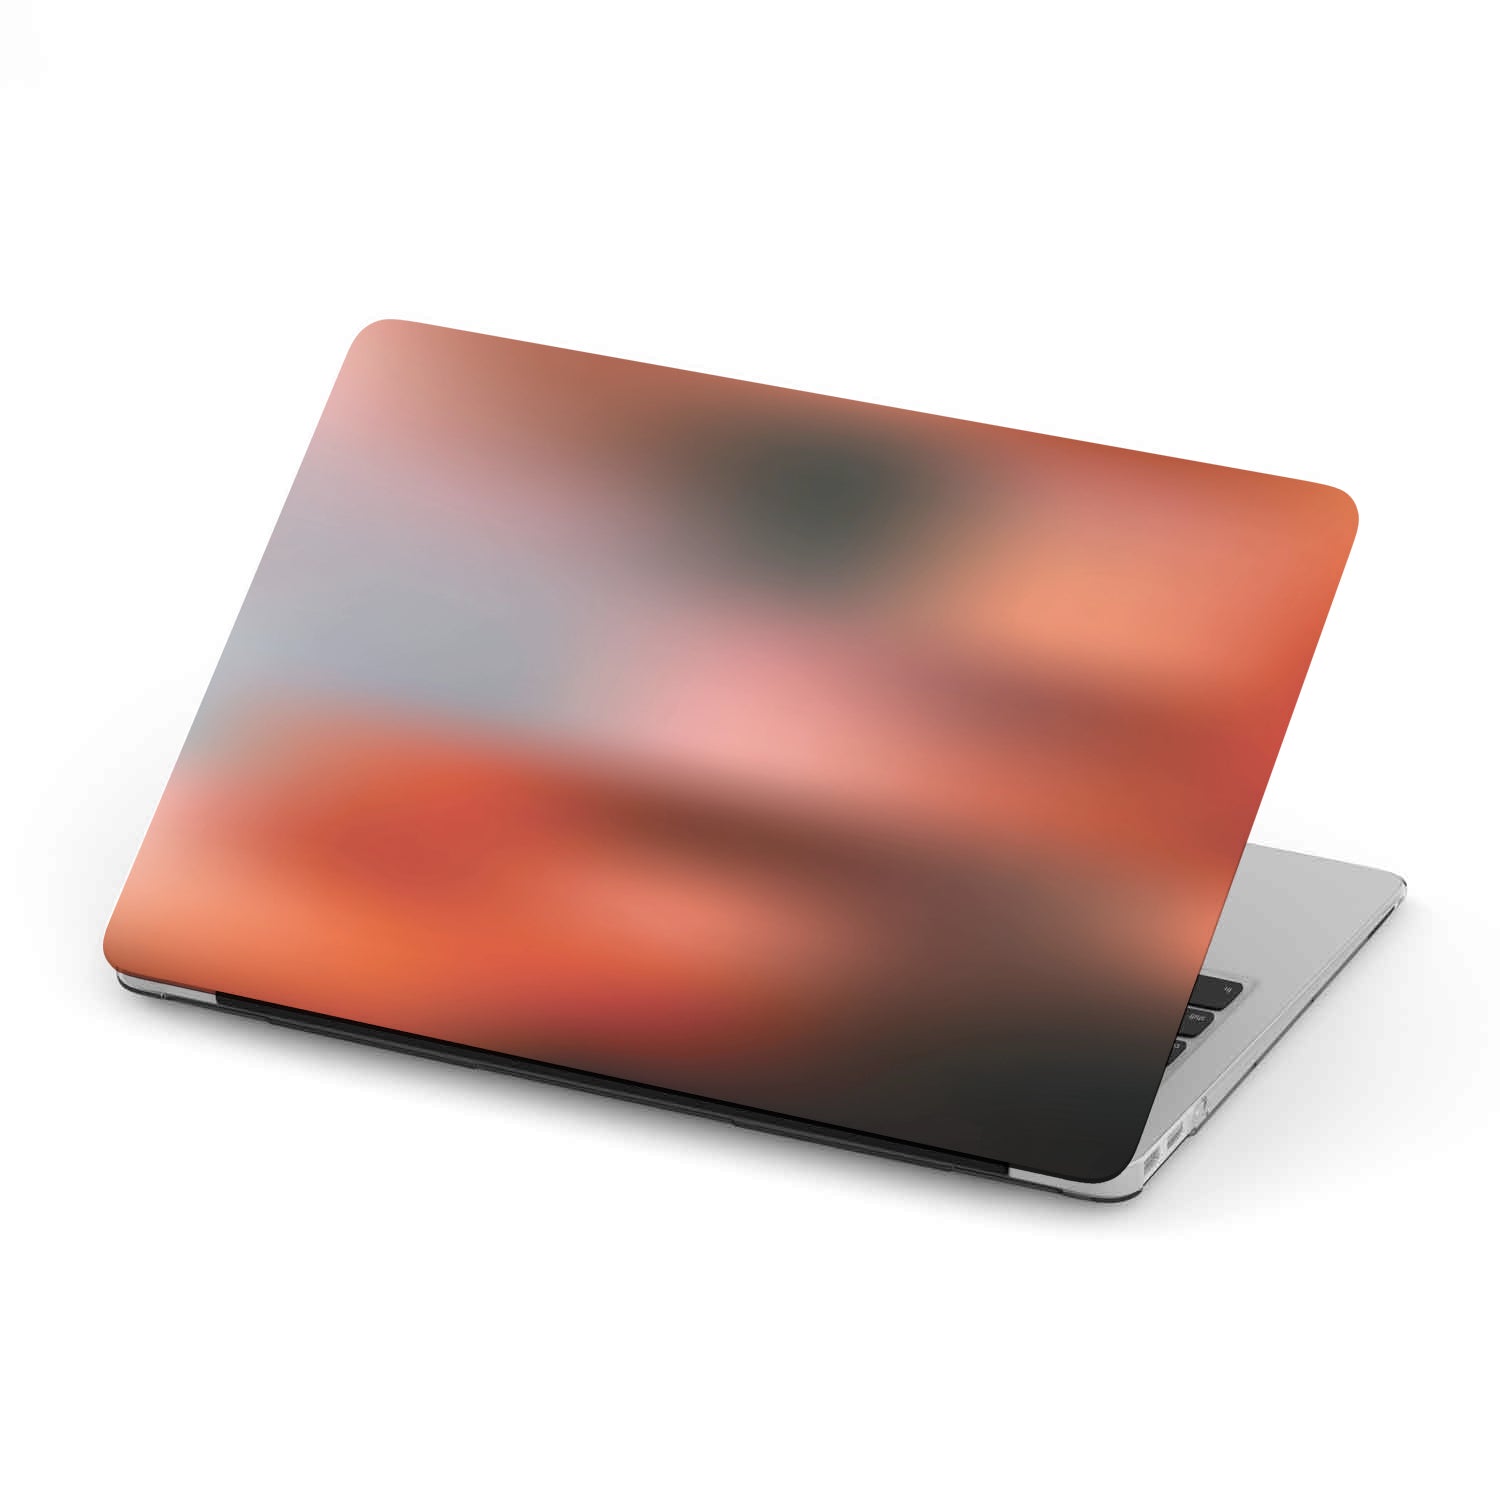 Furnace morgue Forstyrre MacBook Case - Red Supreme - Digital Rawness